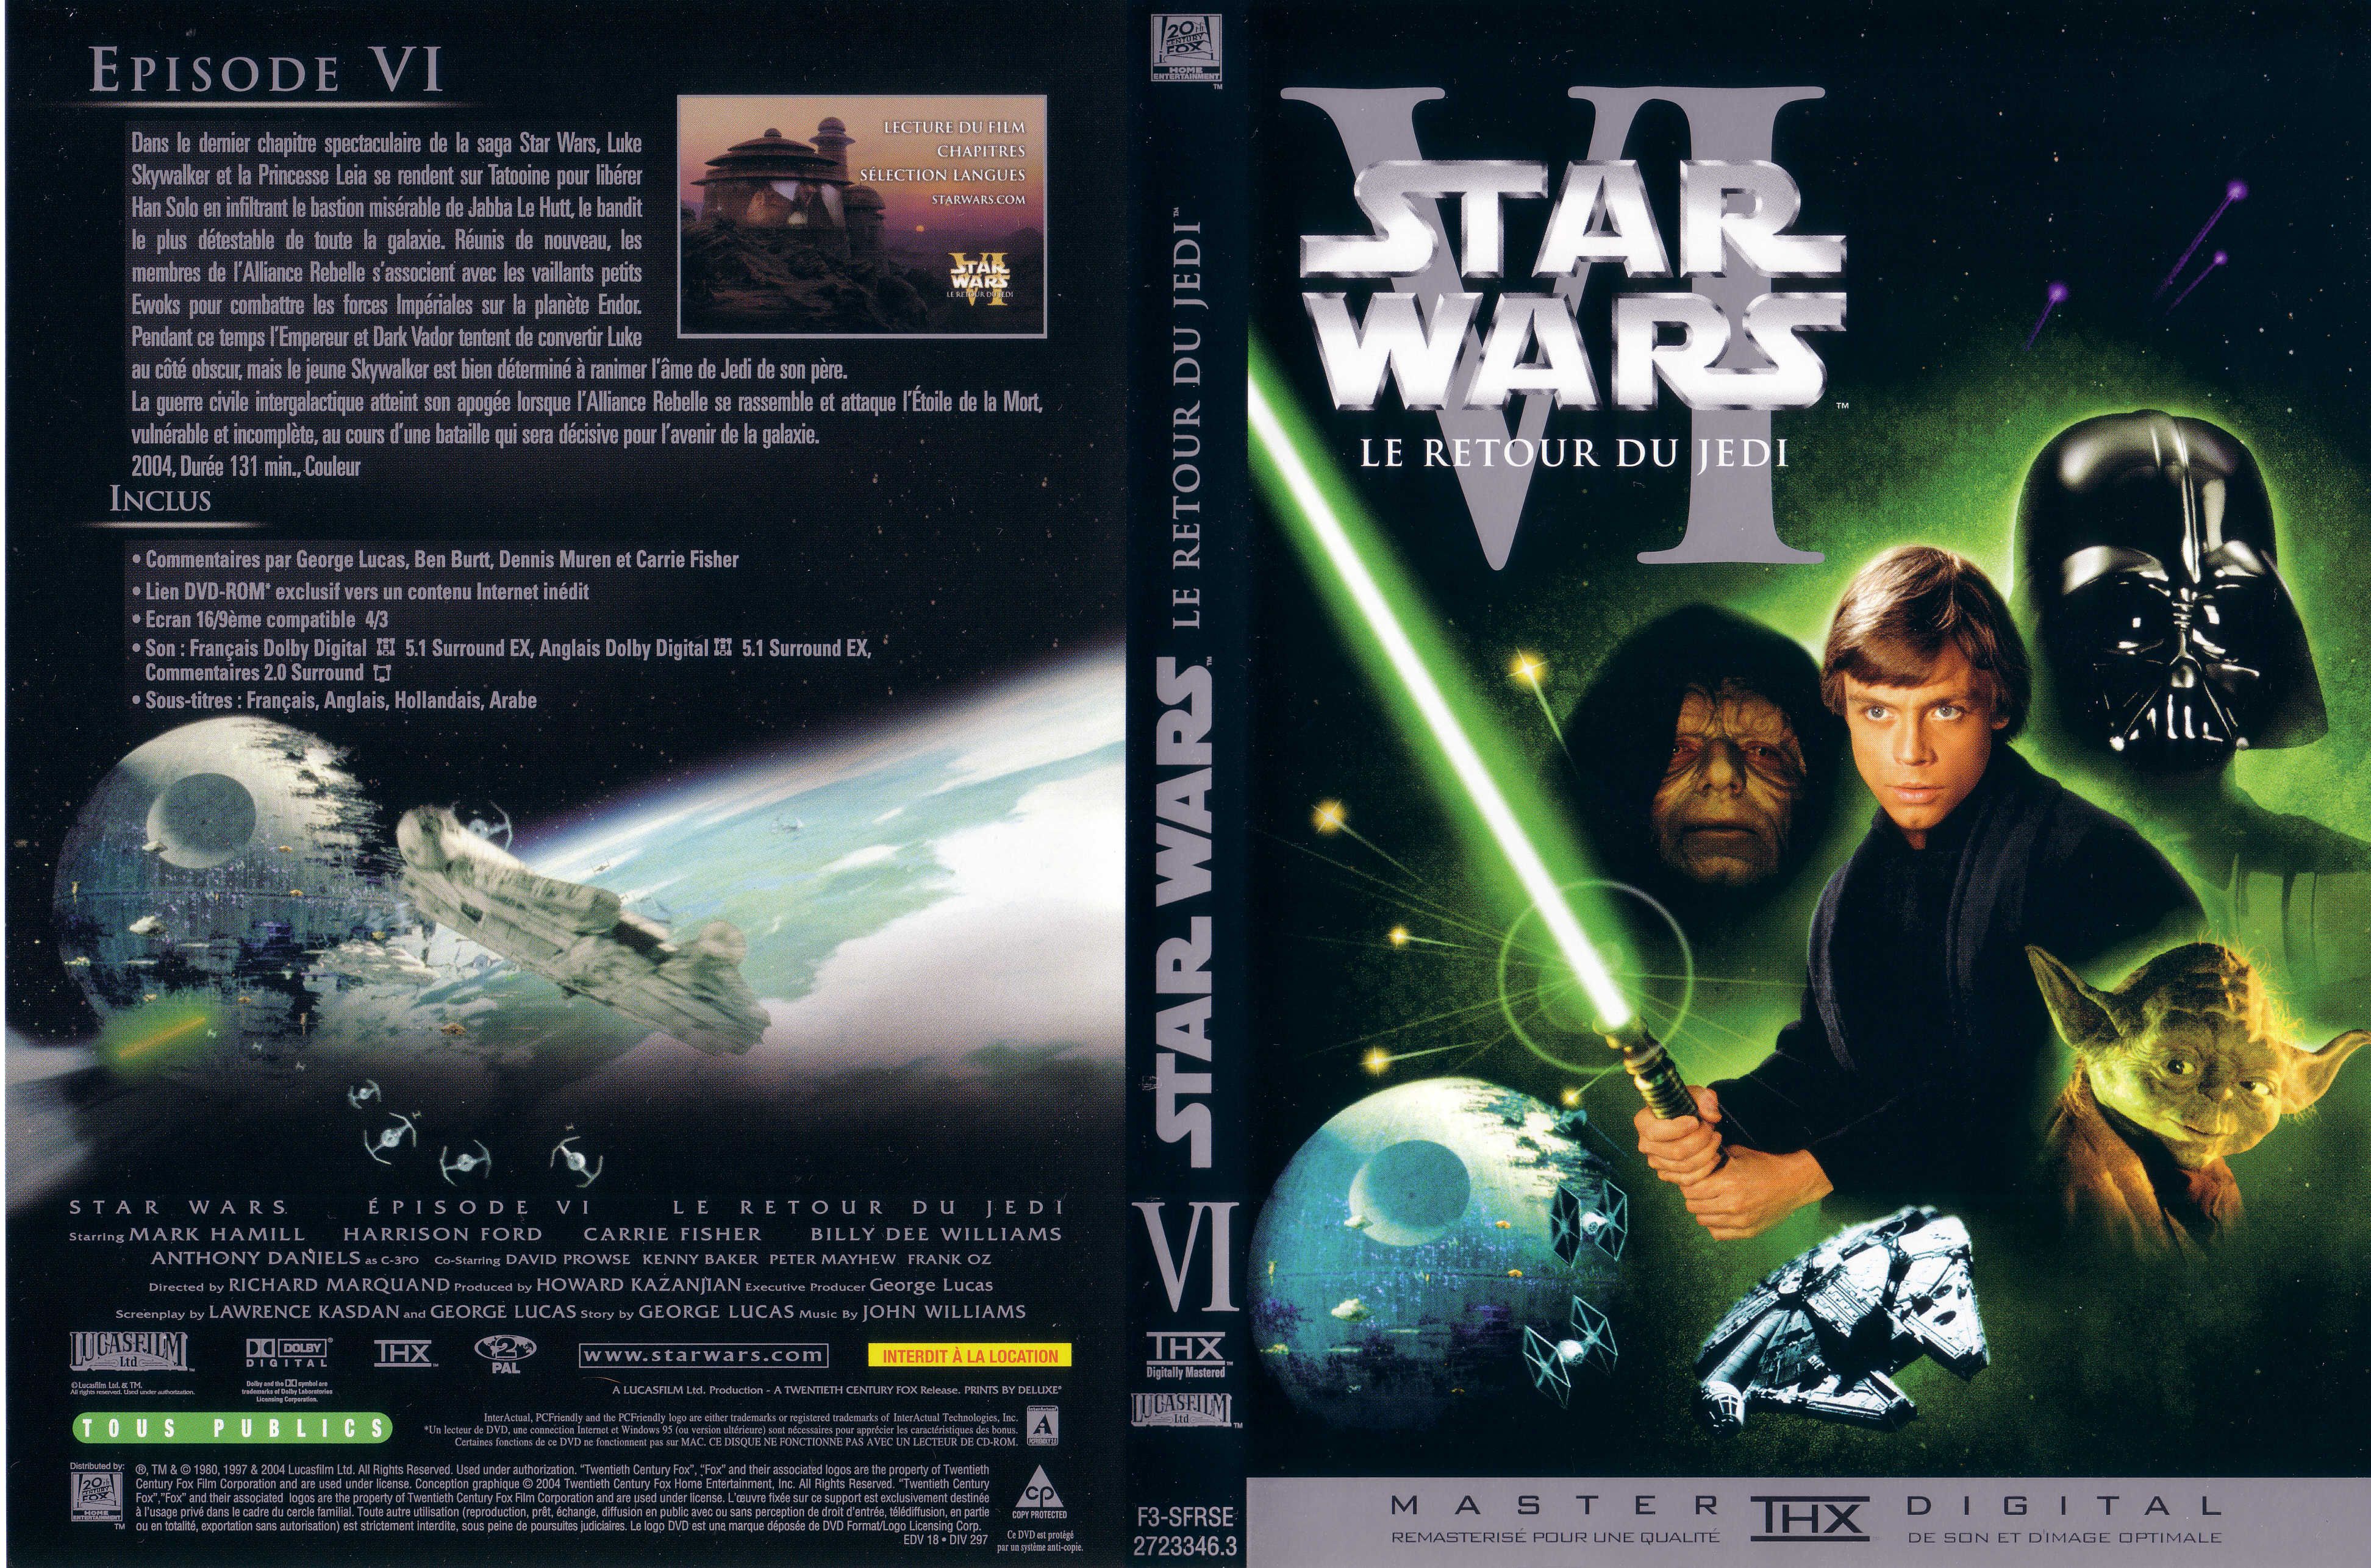 Jaquette DVD Star Wars Le retour du jedi